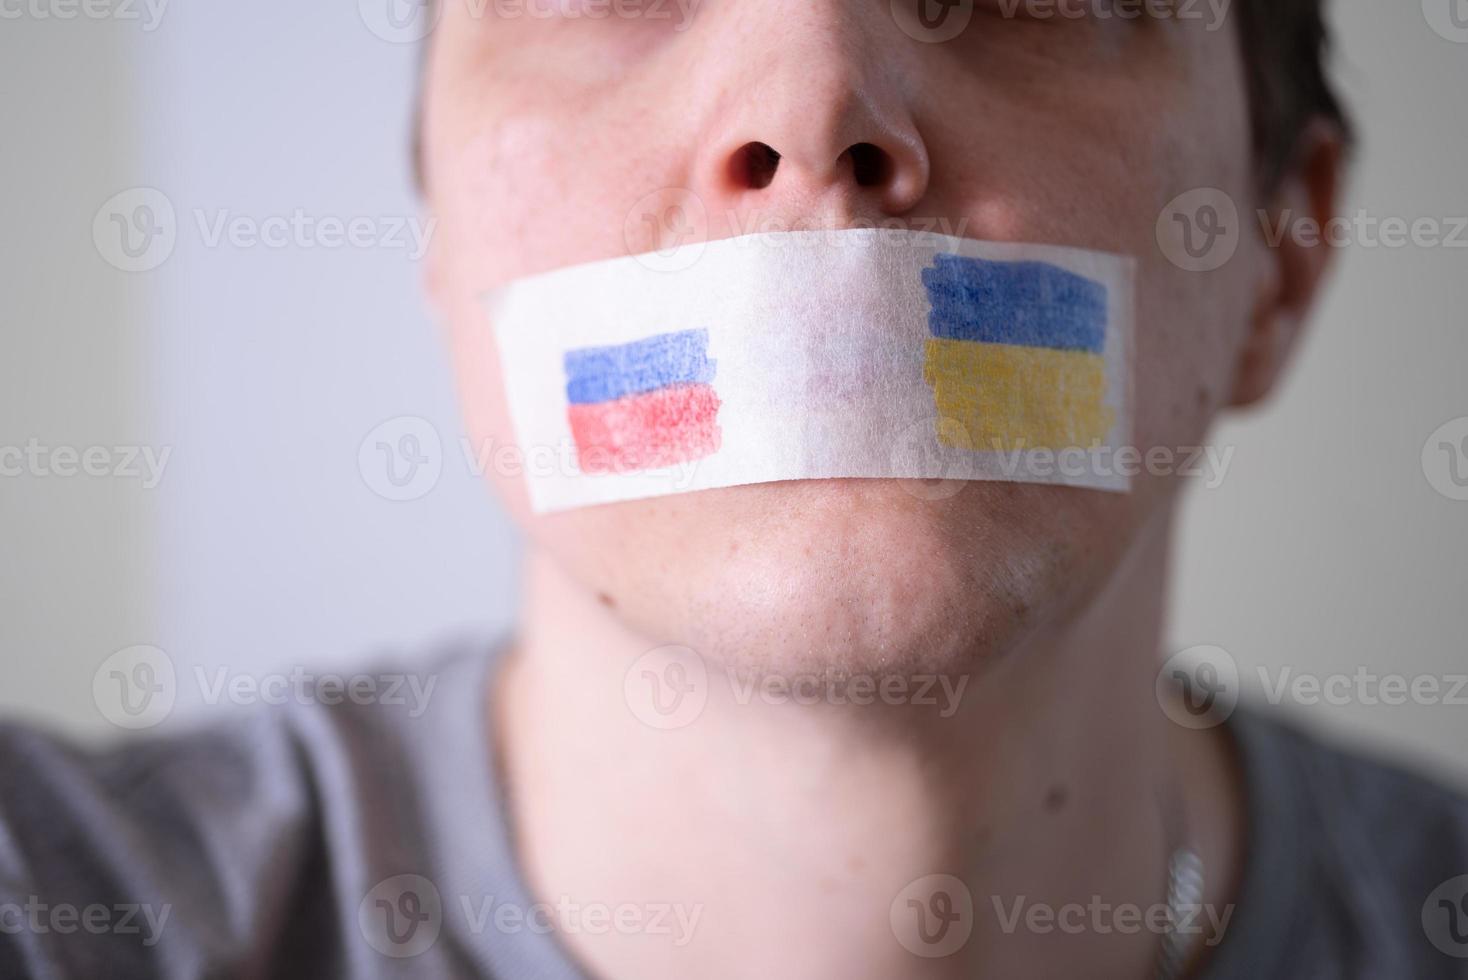 klebeband auf dem mund mit der flagge von russland und der ukraine, versucht zu sagen. foto